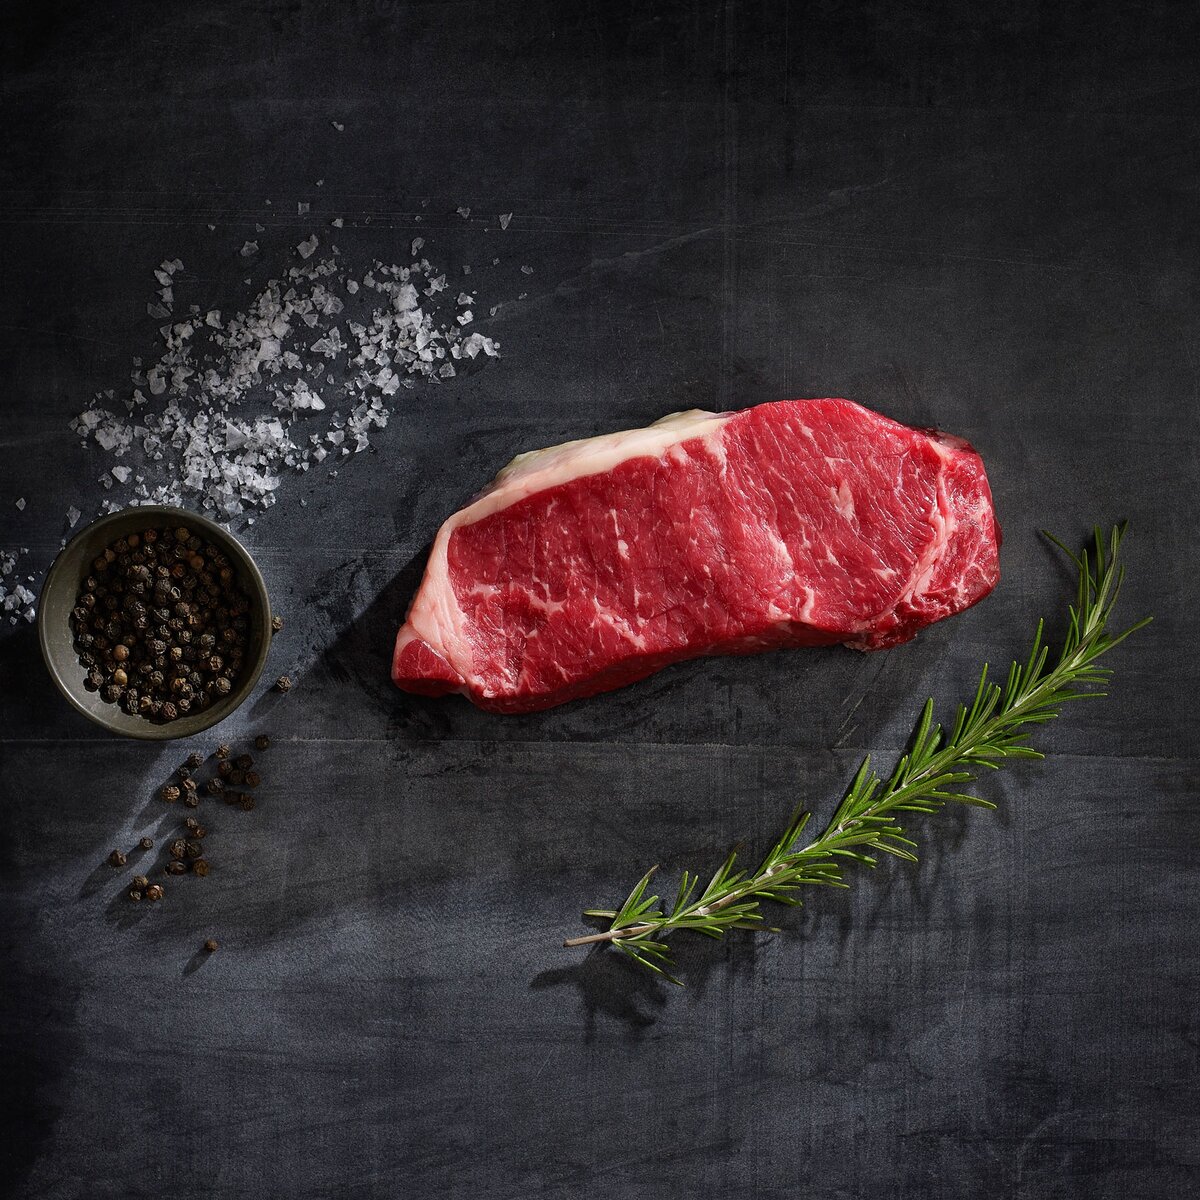 Как выбрать мясо для приготовления?